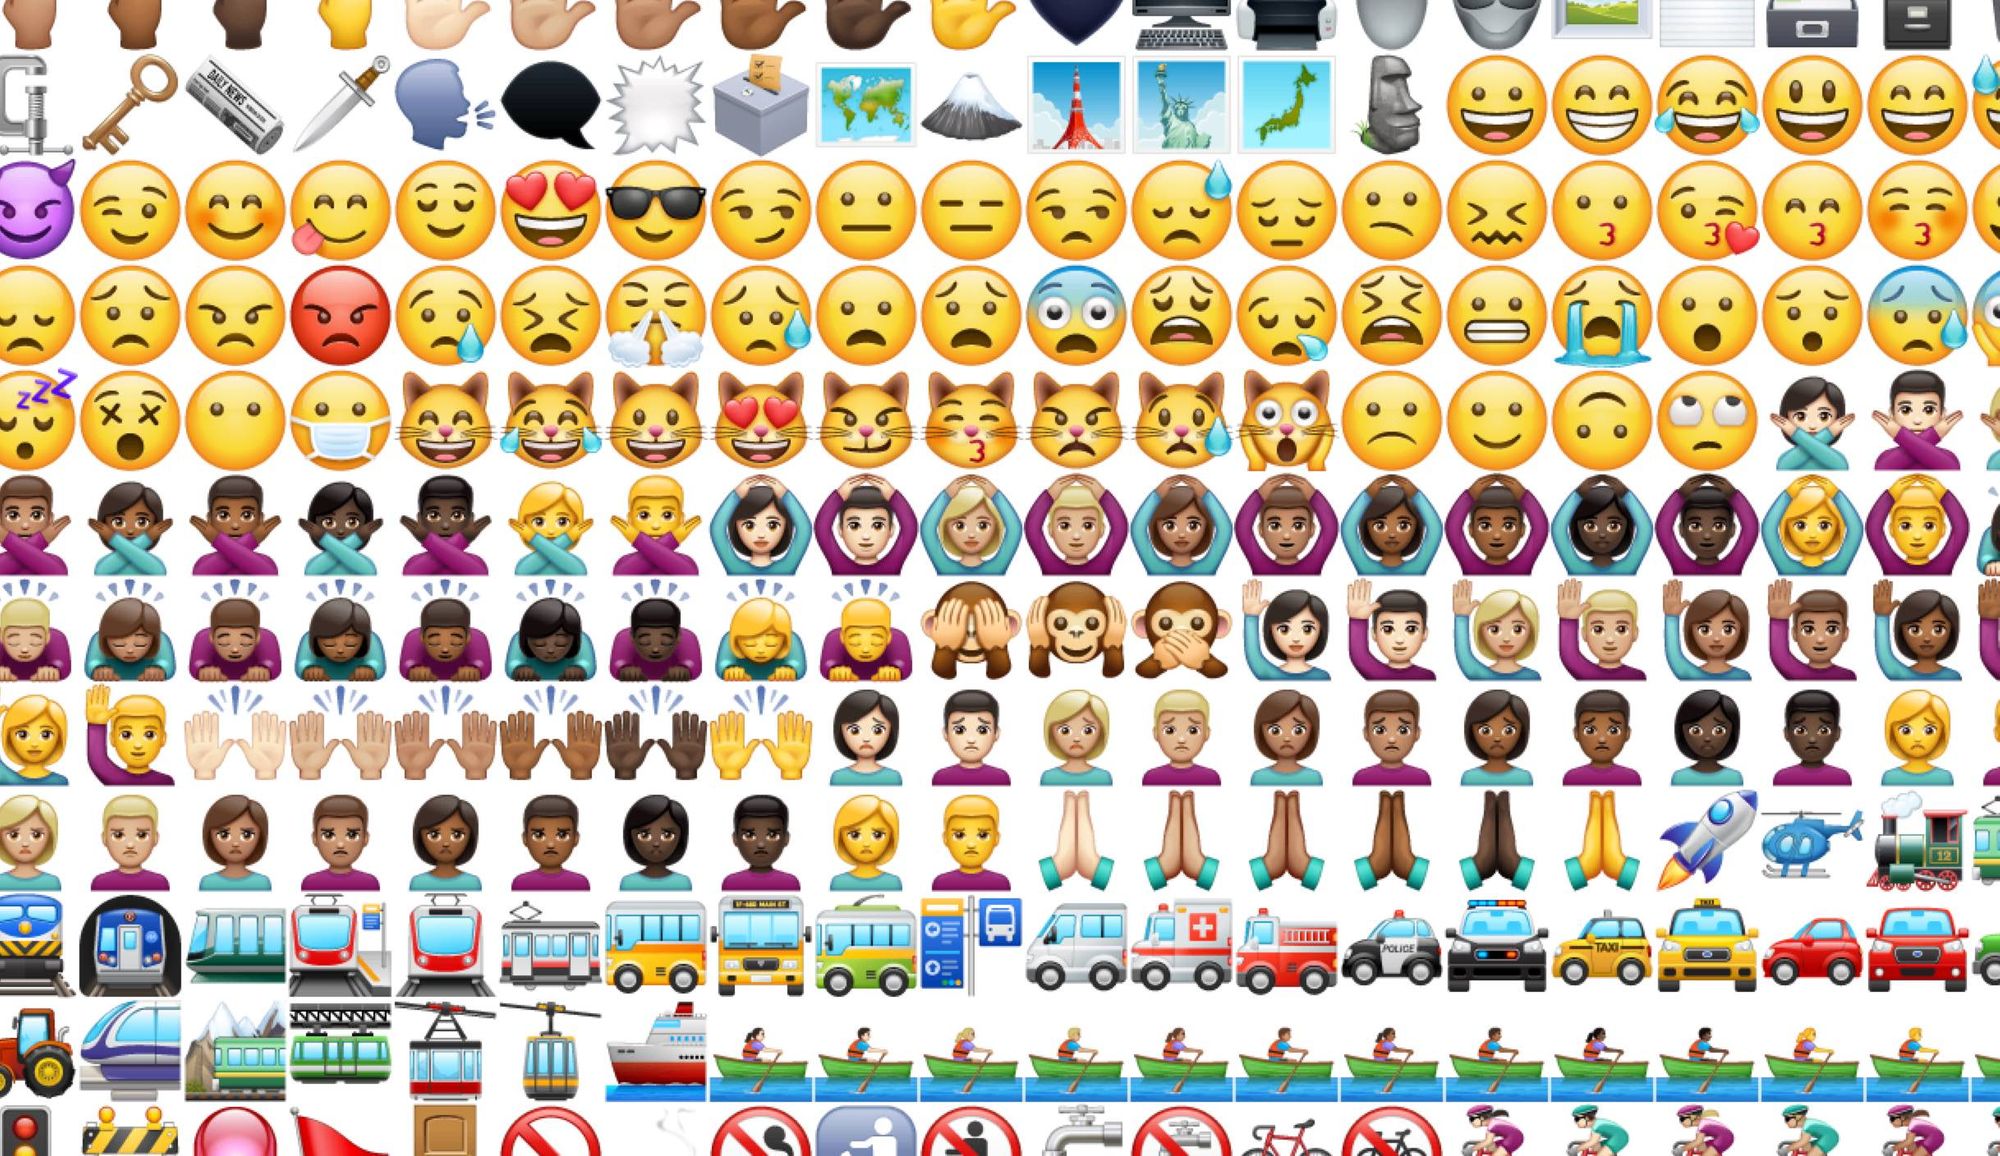 WhatsApp Unveils Its Own Emojis